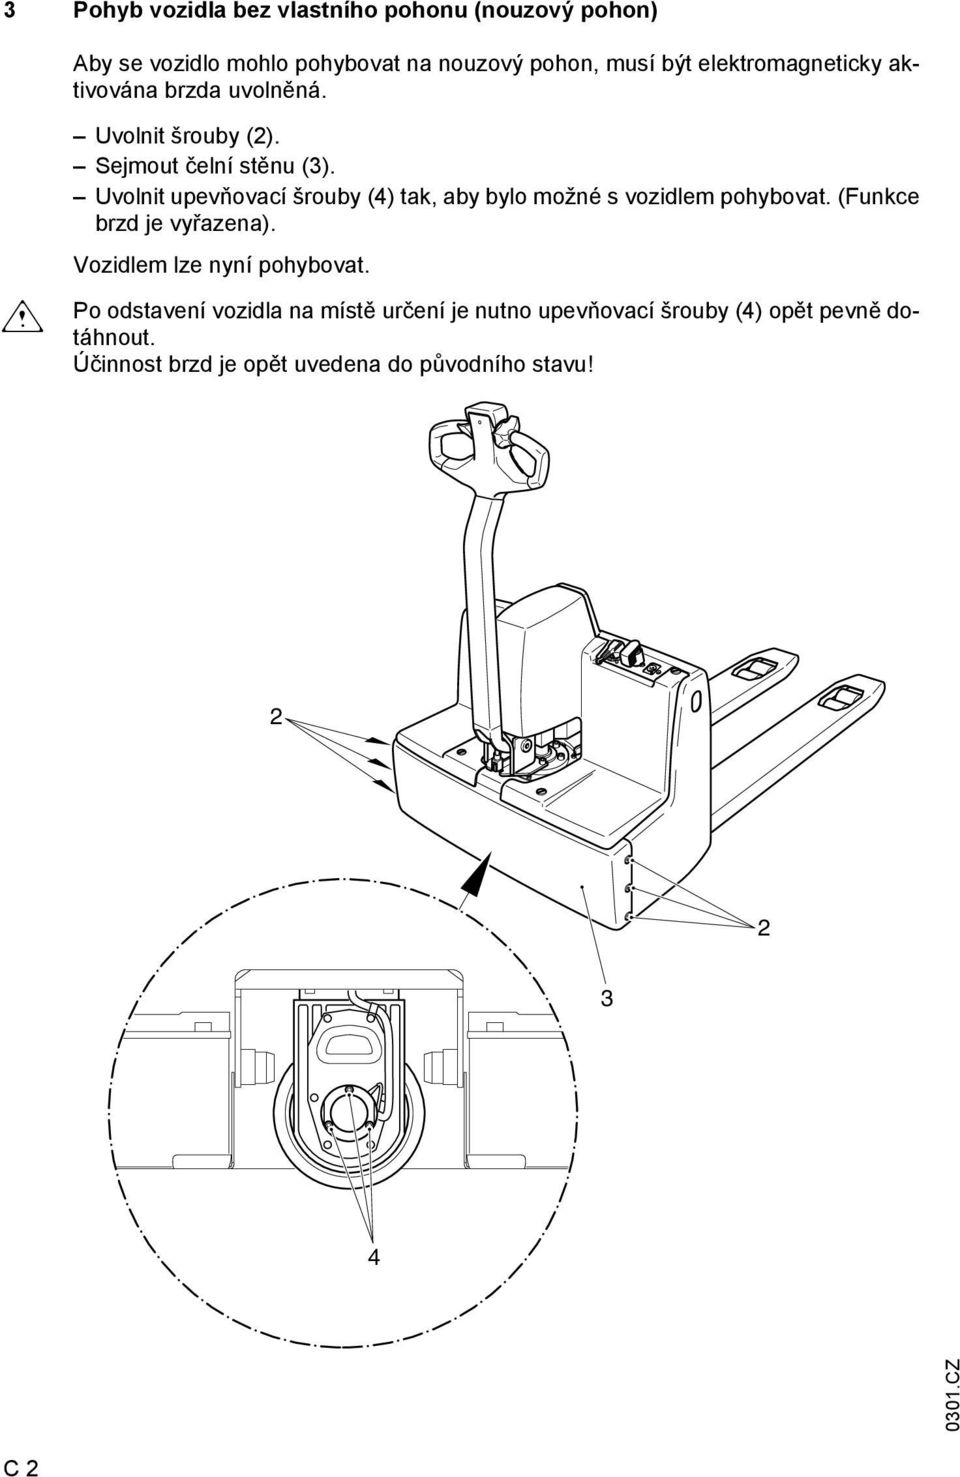 Uvolnit upevňovací šrouby (4) tak, aby bylo možné s vozidlem pohybovat. (Funkce brzd je vyřazena).